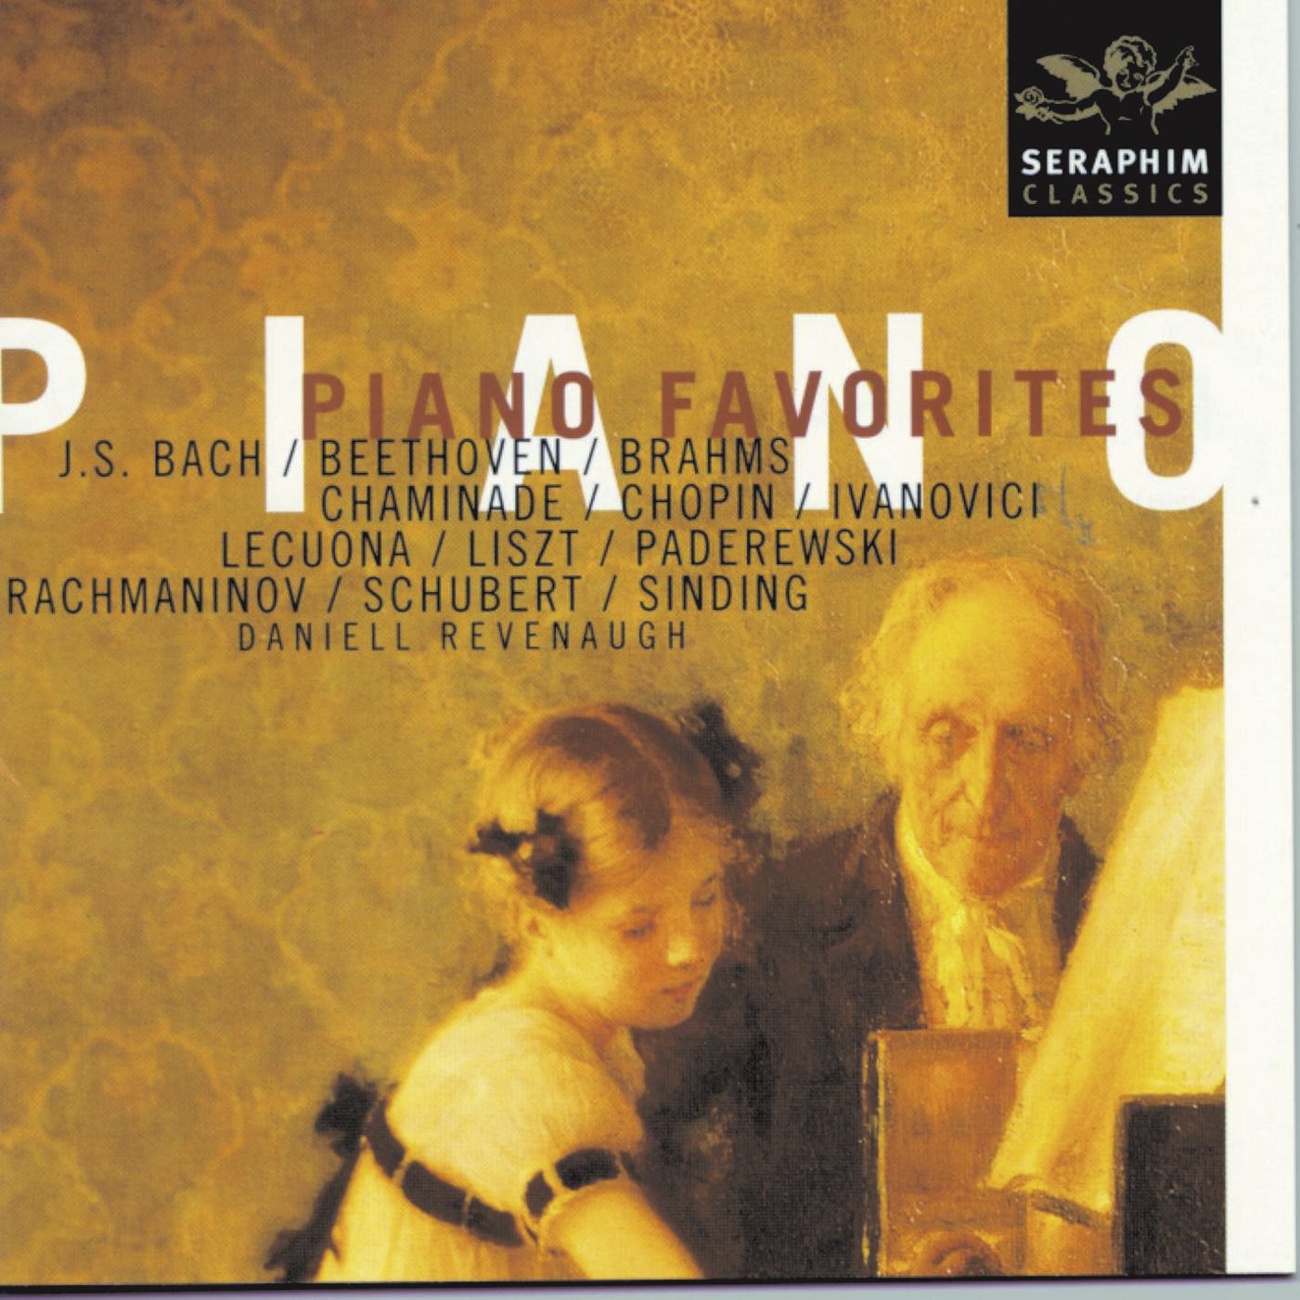 Clair de lune (Suite bergamasque) (1999 Digital Remaster)